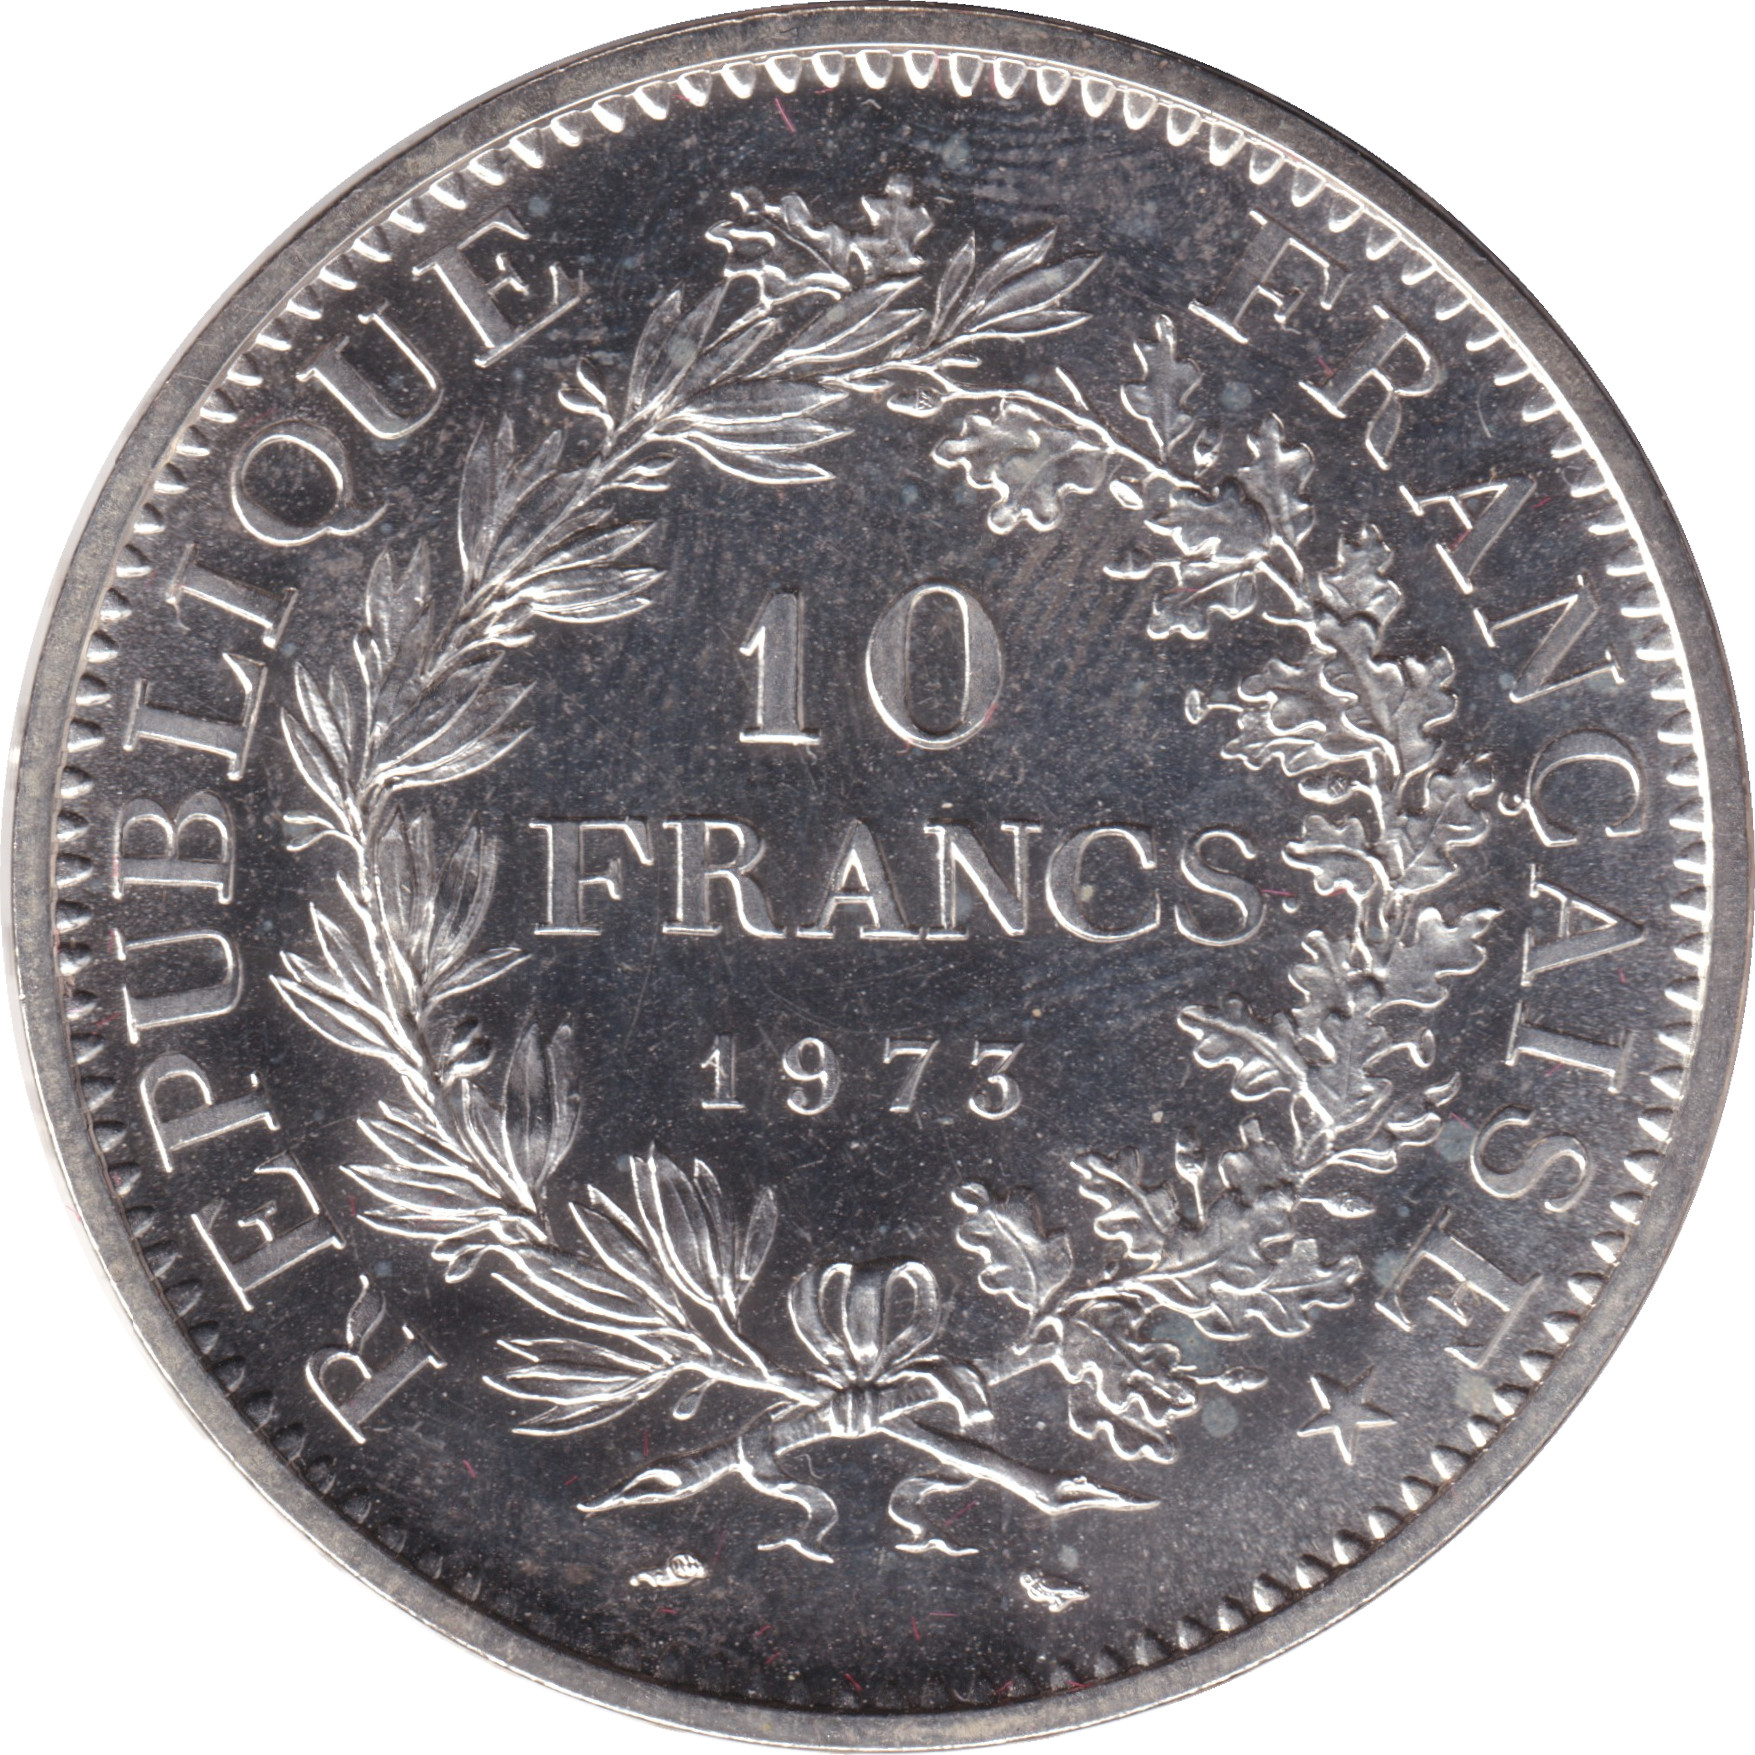 10 francs - Hercule